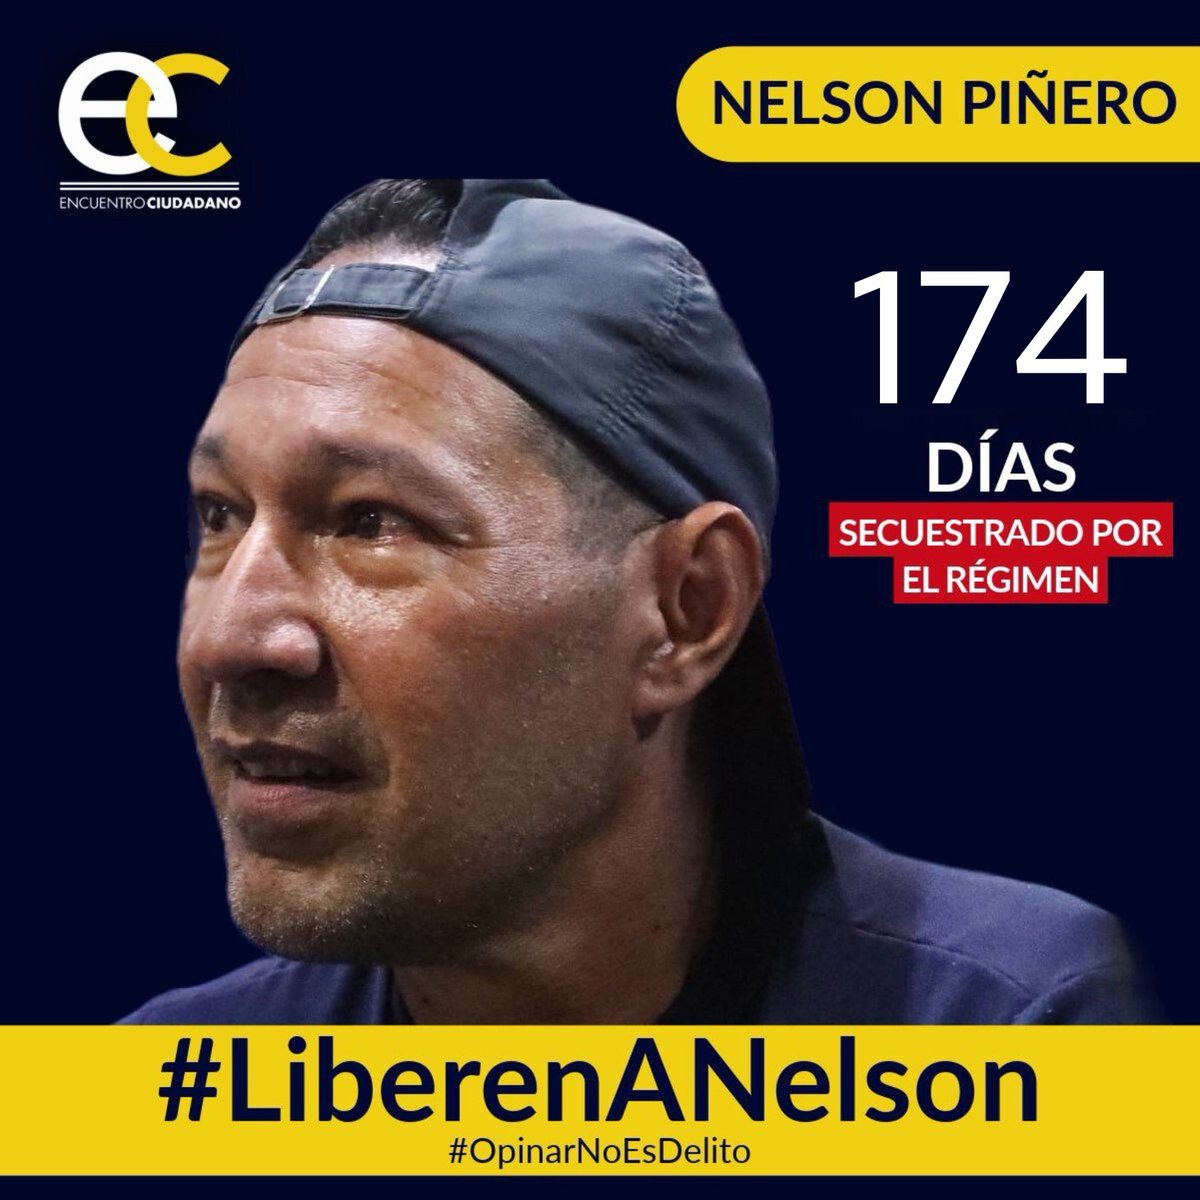 #13May | Nelson Piñero, activista de #EncuentroCiudadano, lleva 174 días secuestrado por el régimen solo por emitir sus opiniones en redes sociales. #OpinarNoEsDelito y por eso exigimos su liberación inmediata. #LiberenANelson #LiberenALosPresosPolíticos